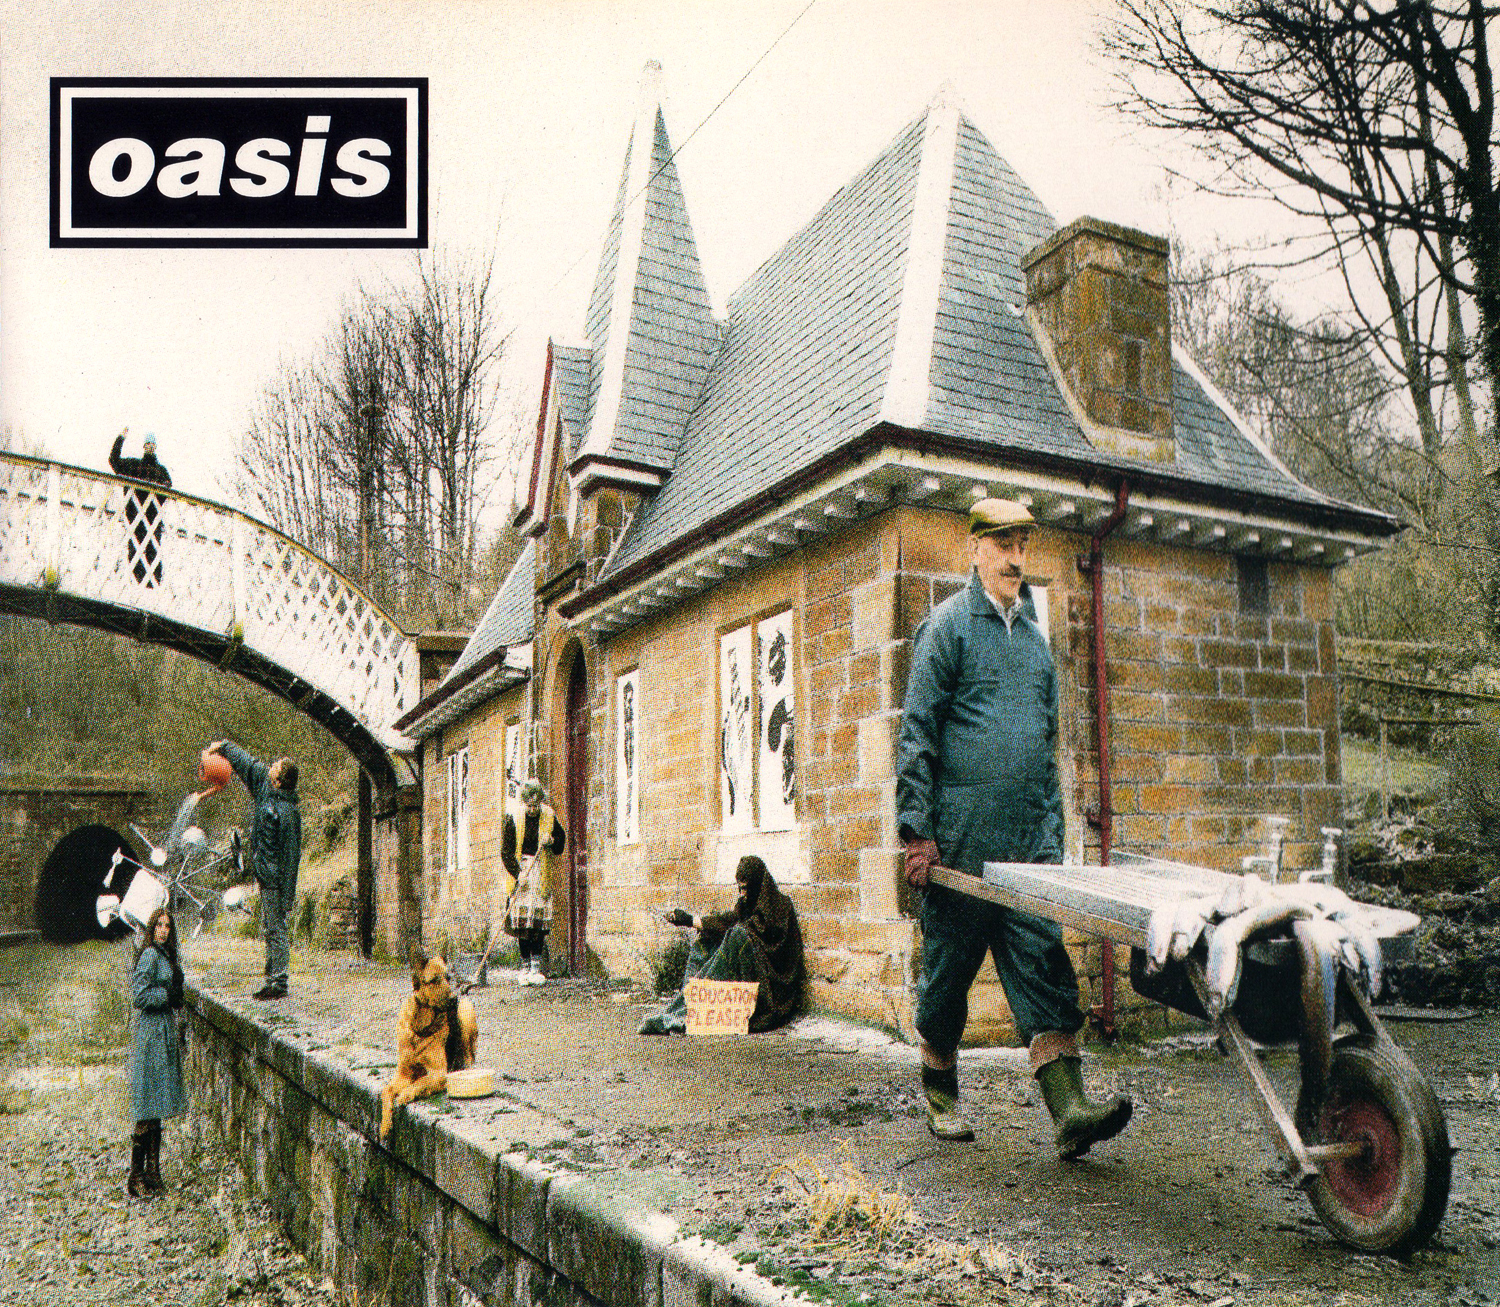 oasis (オアシス) 6thシングル『Some Might Say (サム・マイト・セイ)』 (1995年)高画質ジャケット画像 (UK盤 CRESCD 204)